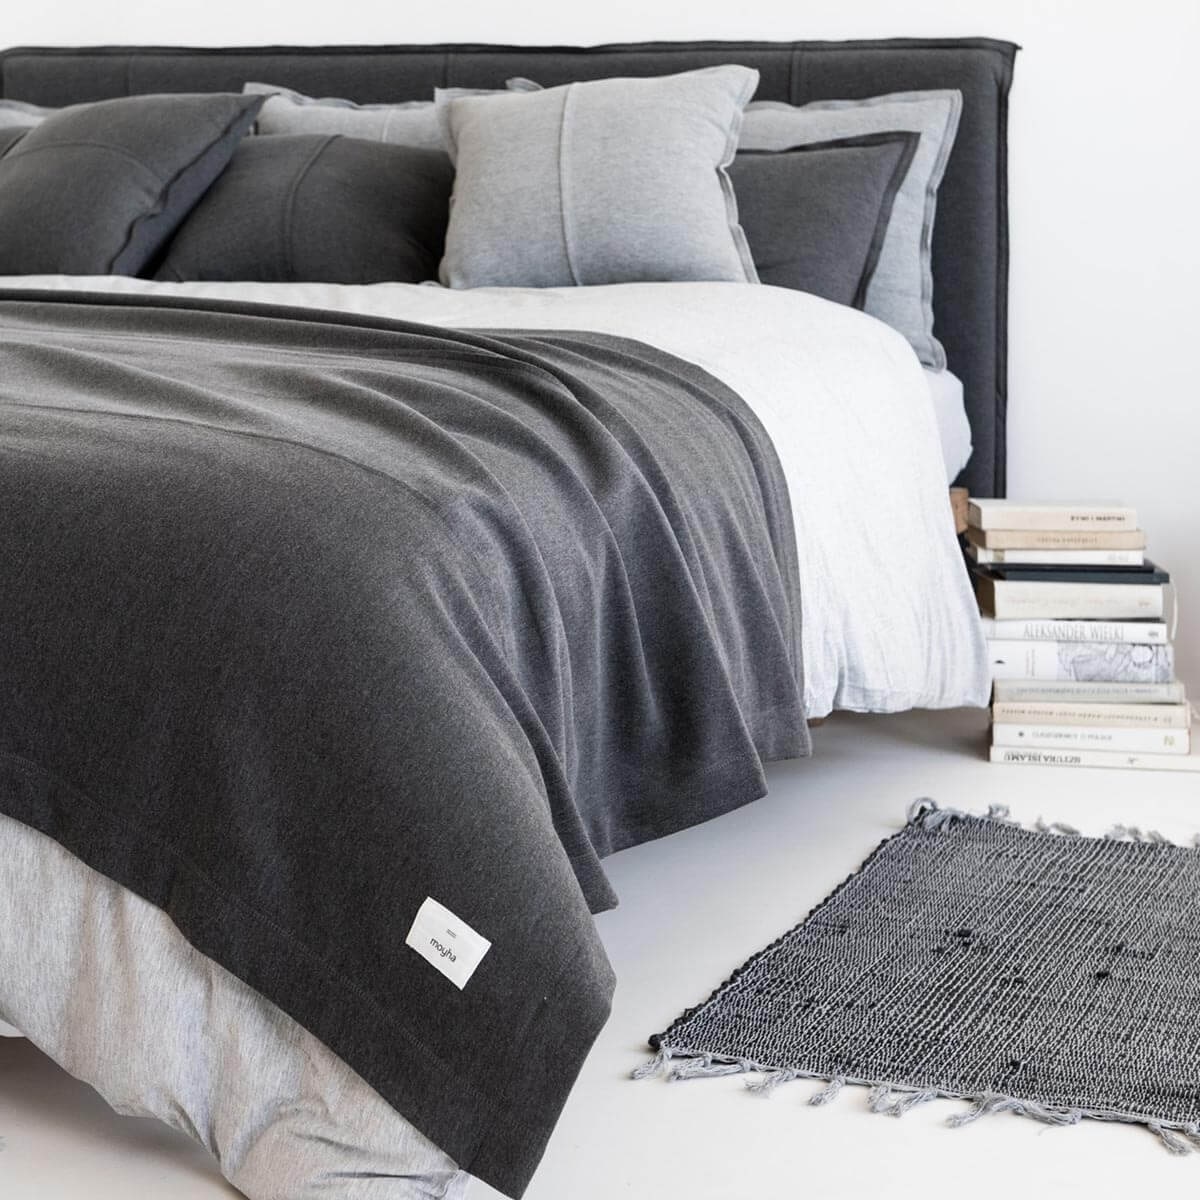 Спалня със спално бельо, одеяло и памучни възглавници